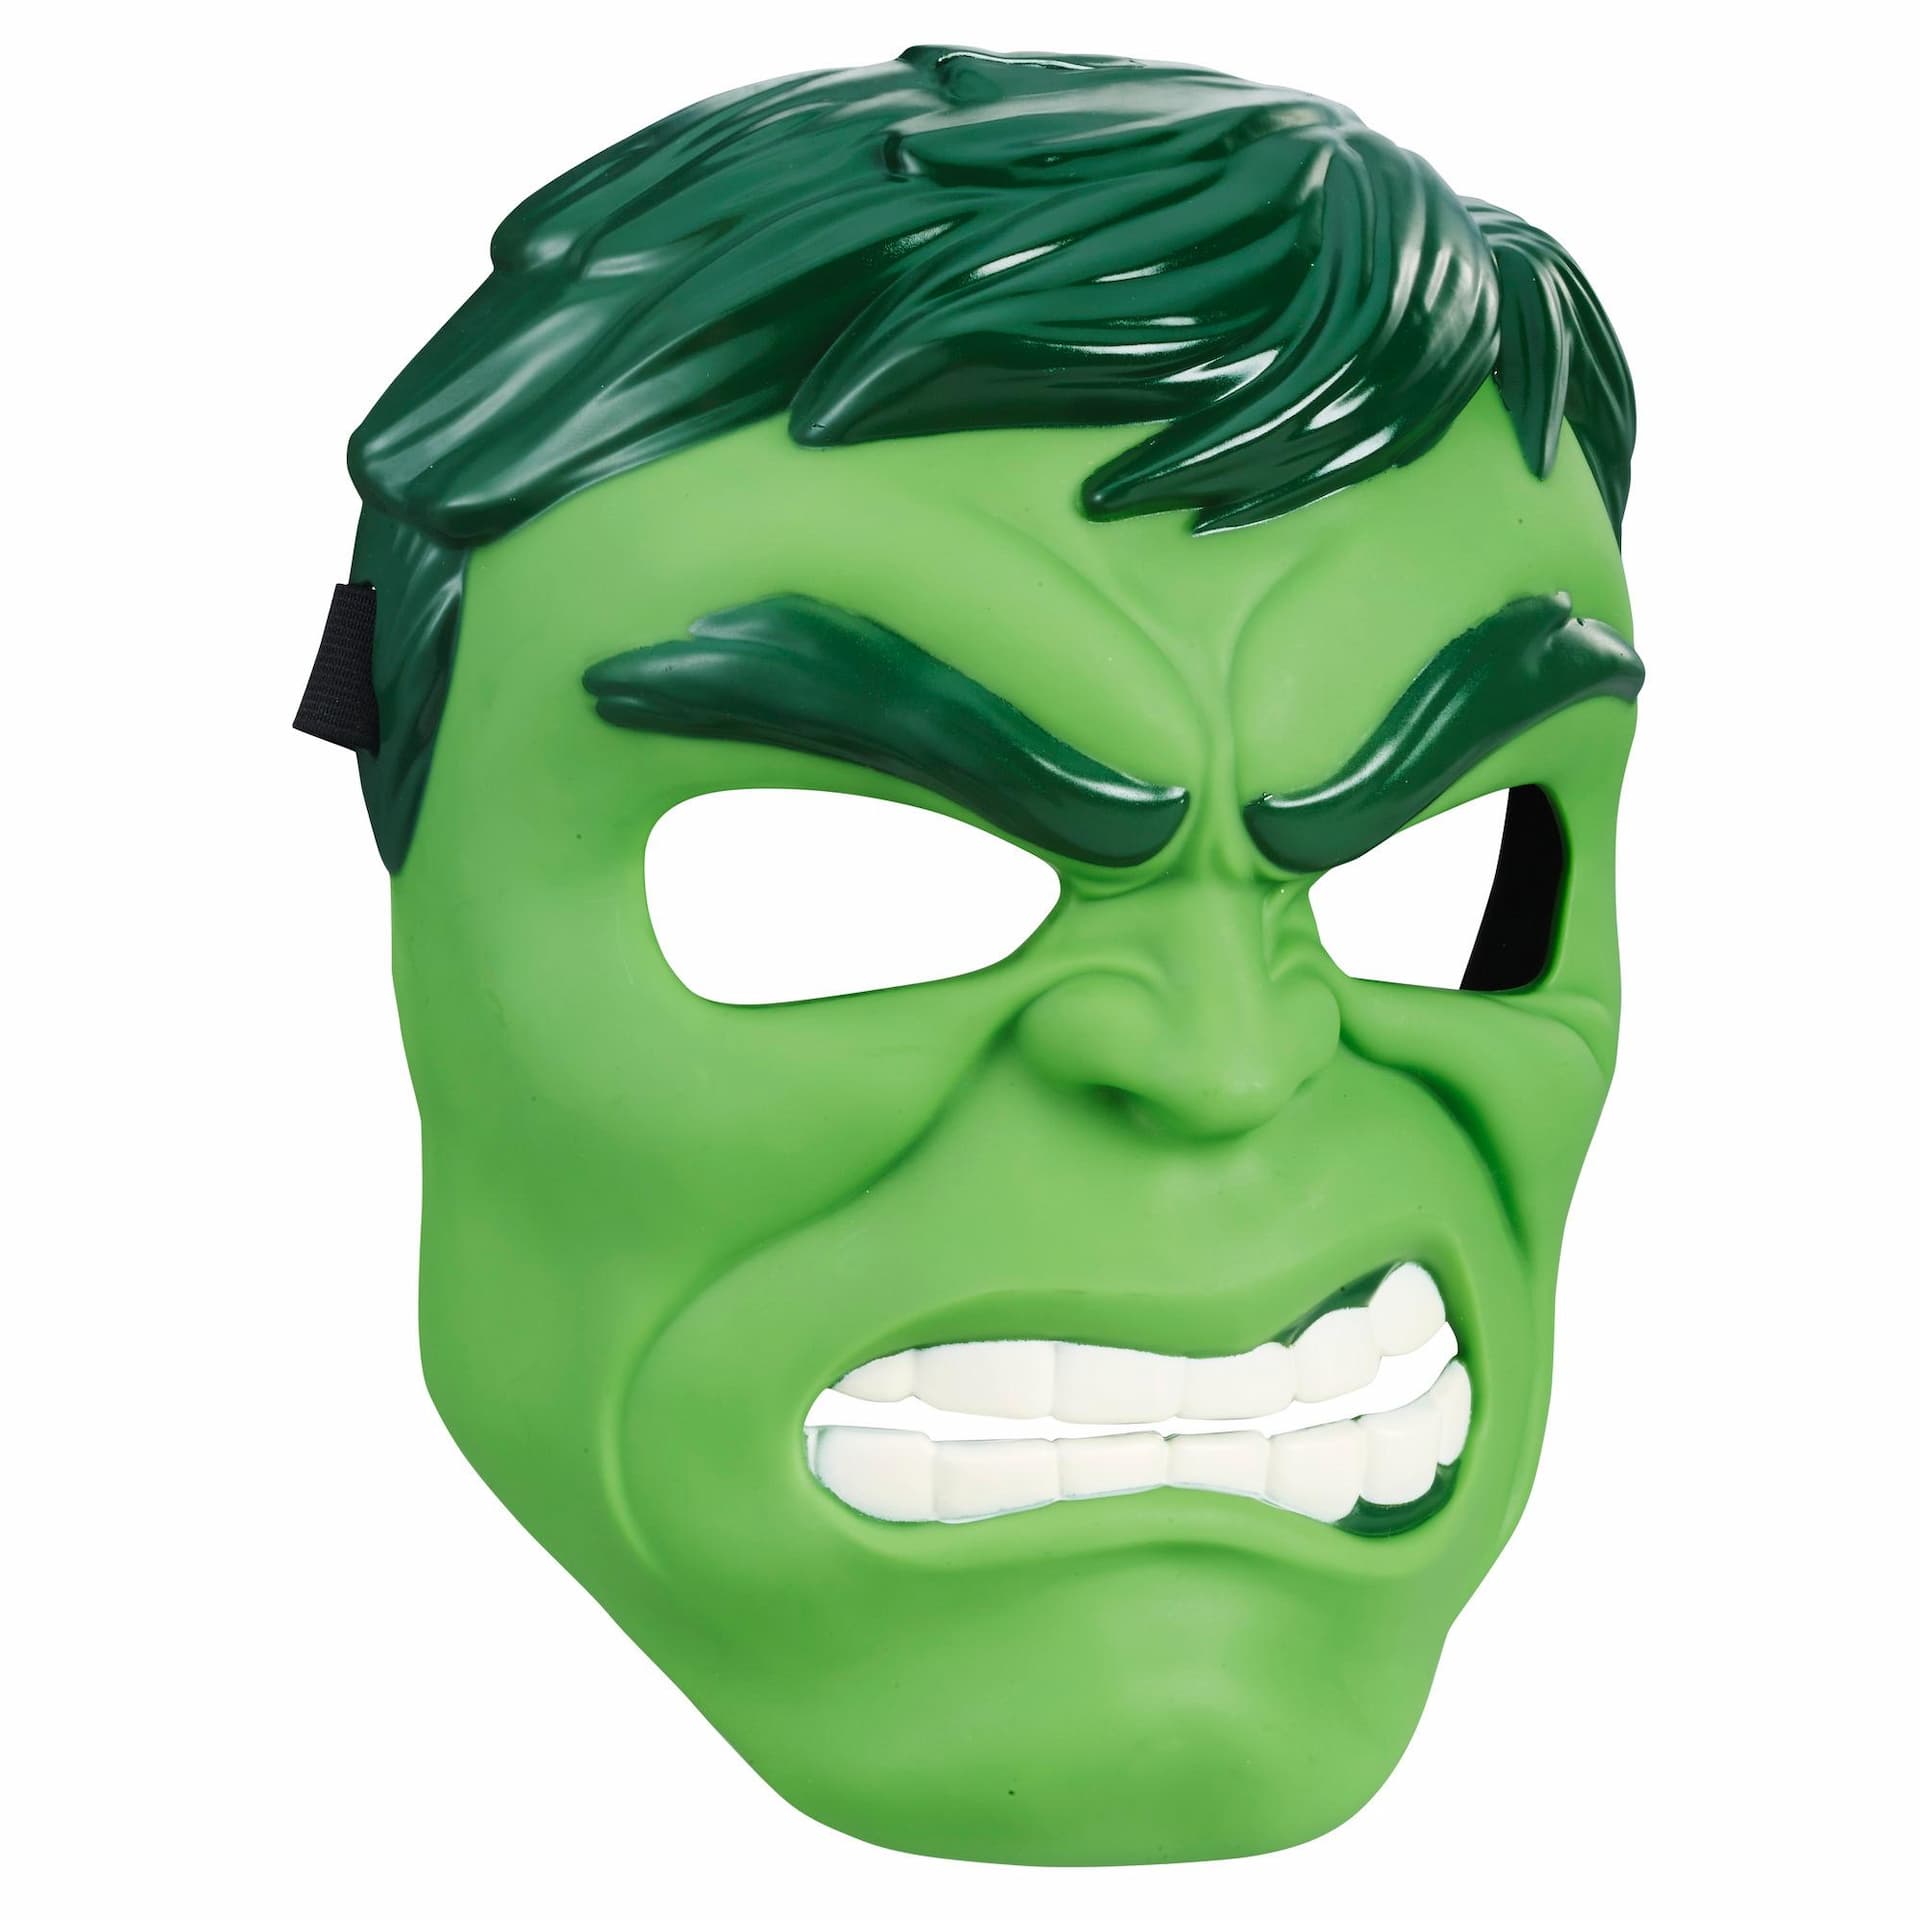 Marvel Avengers Hulk Basic Mask